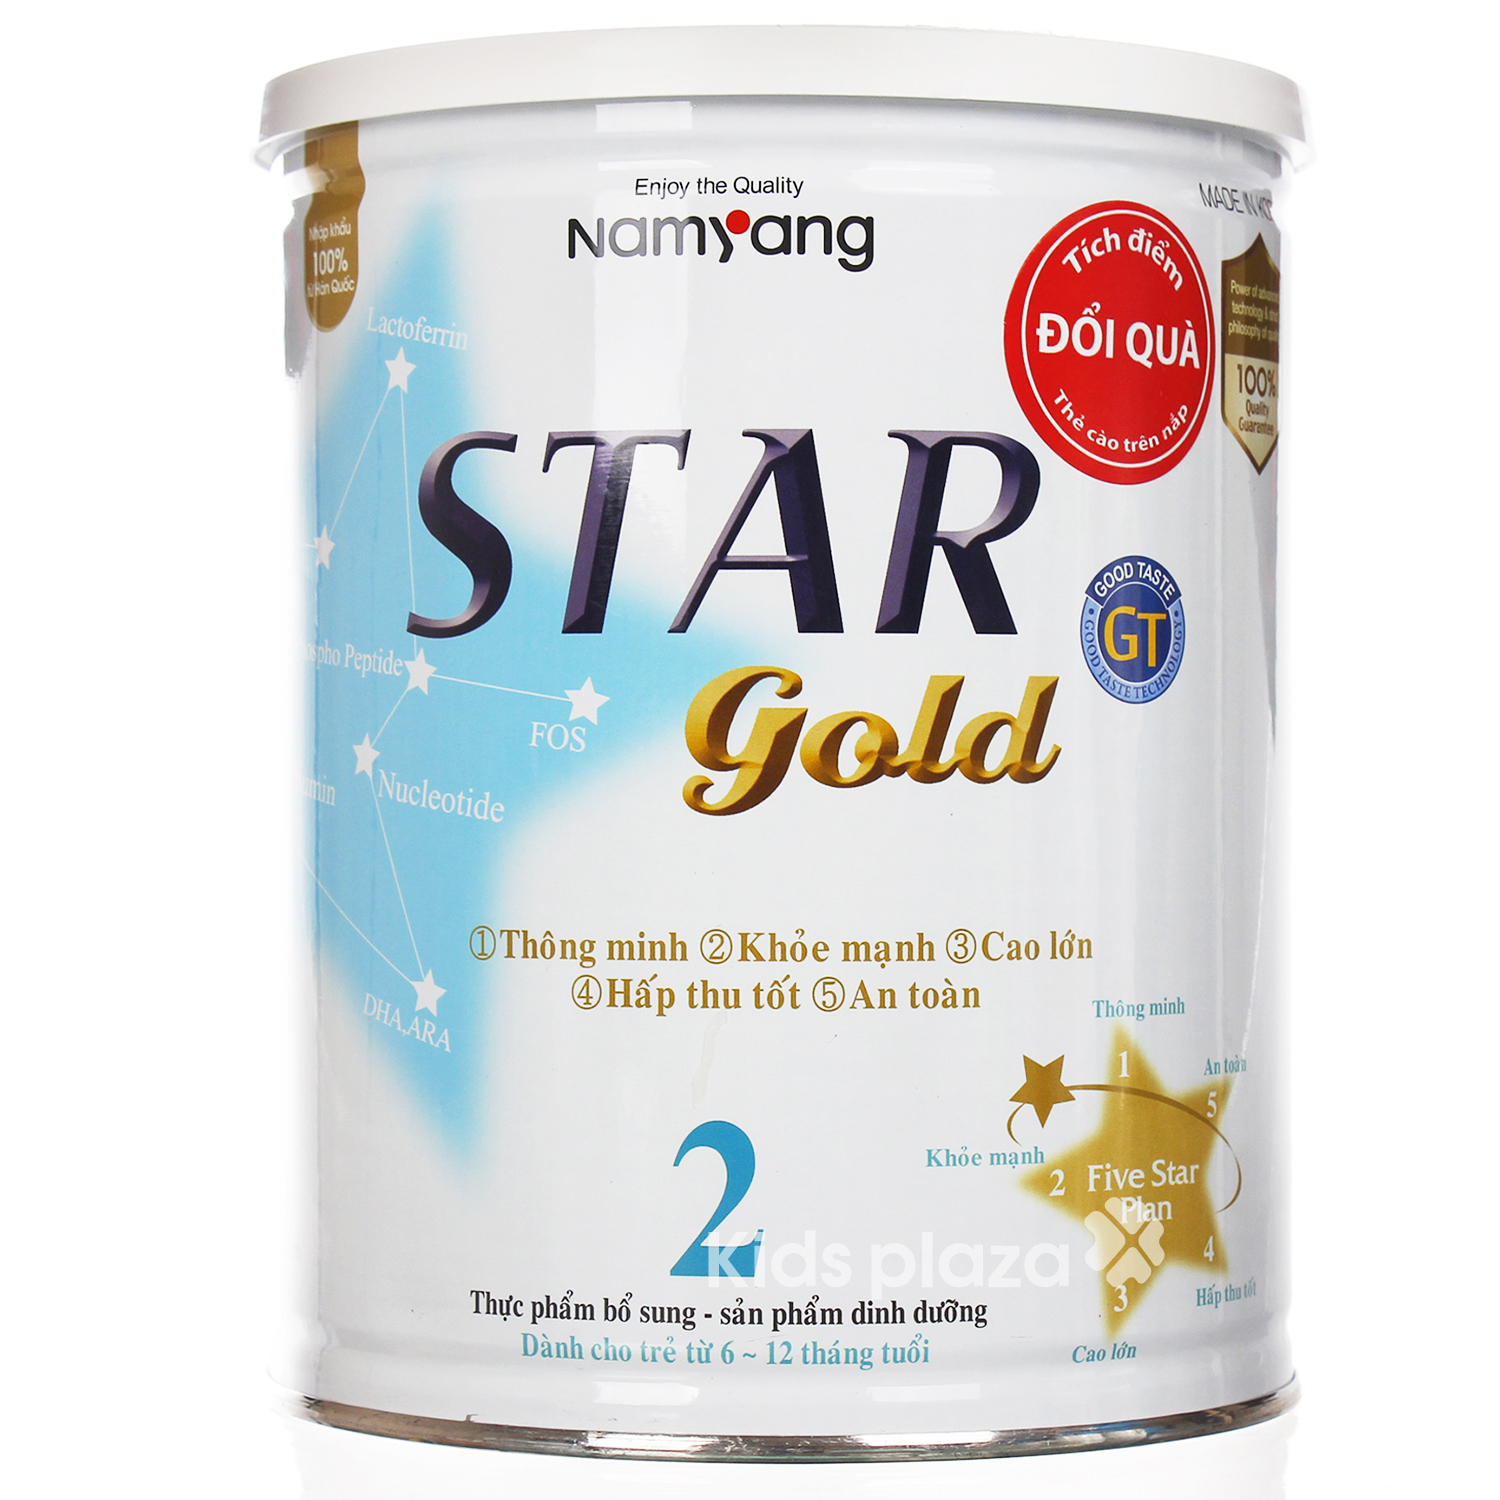 Sữa bột Star Gold số 2 - hộp 800g, dành cho trẻ từ 6-12 tháng tuổi